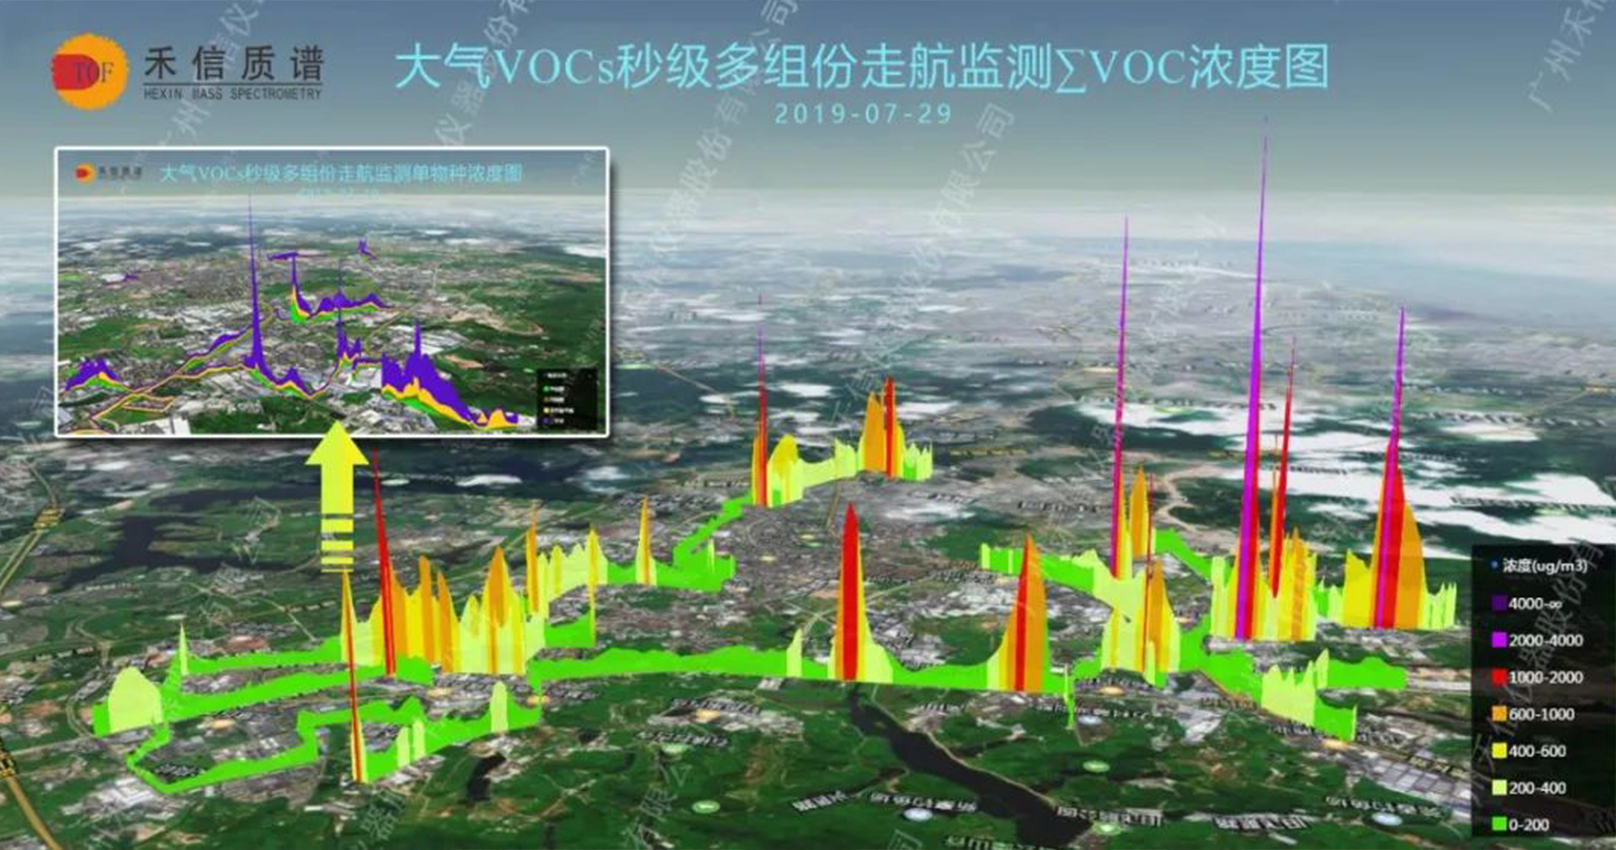 [ Pollution portrait ] VOC precise control plan